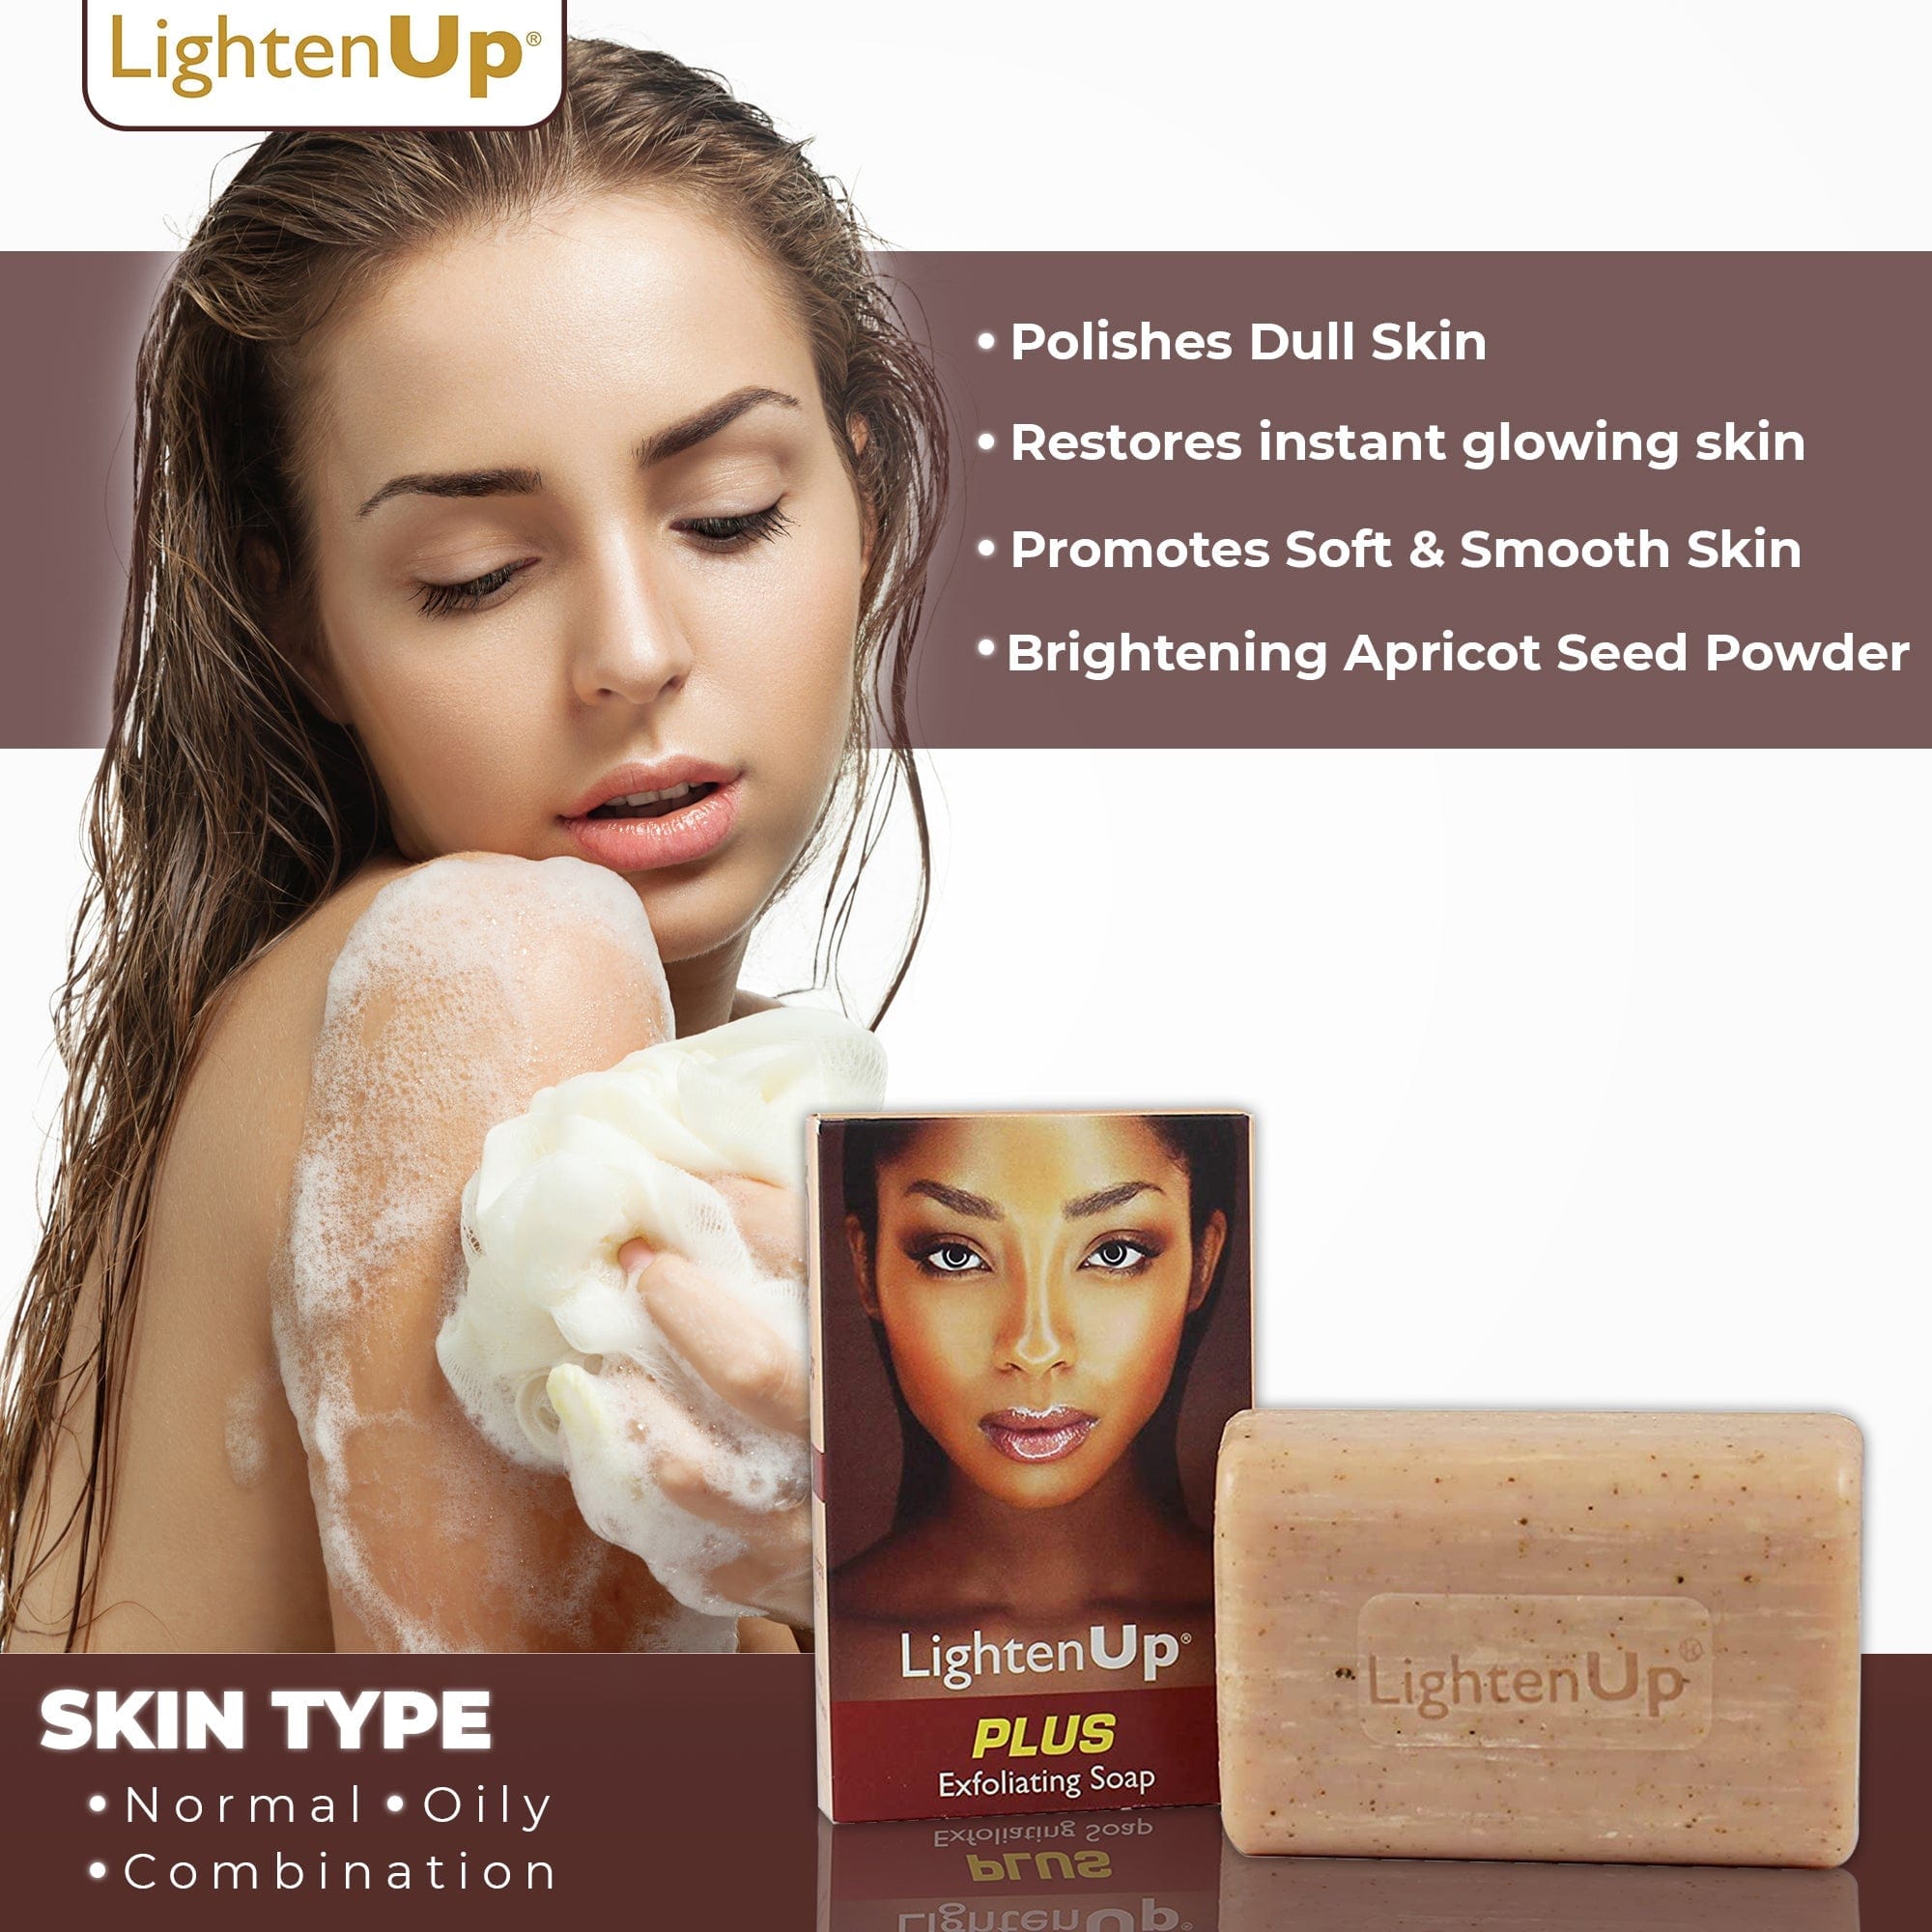 Omic LightenUp PLUS Savon exfoliant - 200g LightenUp - Mitchell Brands - Skin Lightening, Skin Brightening, Fade Dark Spots, Shea Butter, Hair Growth Products